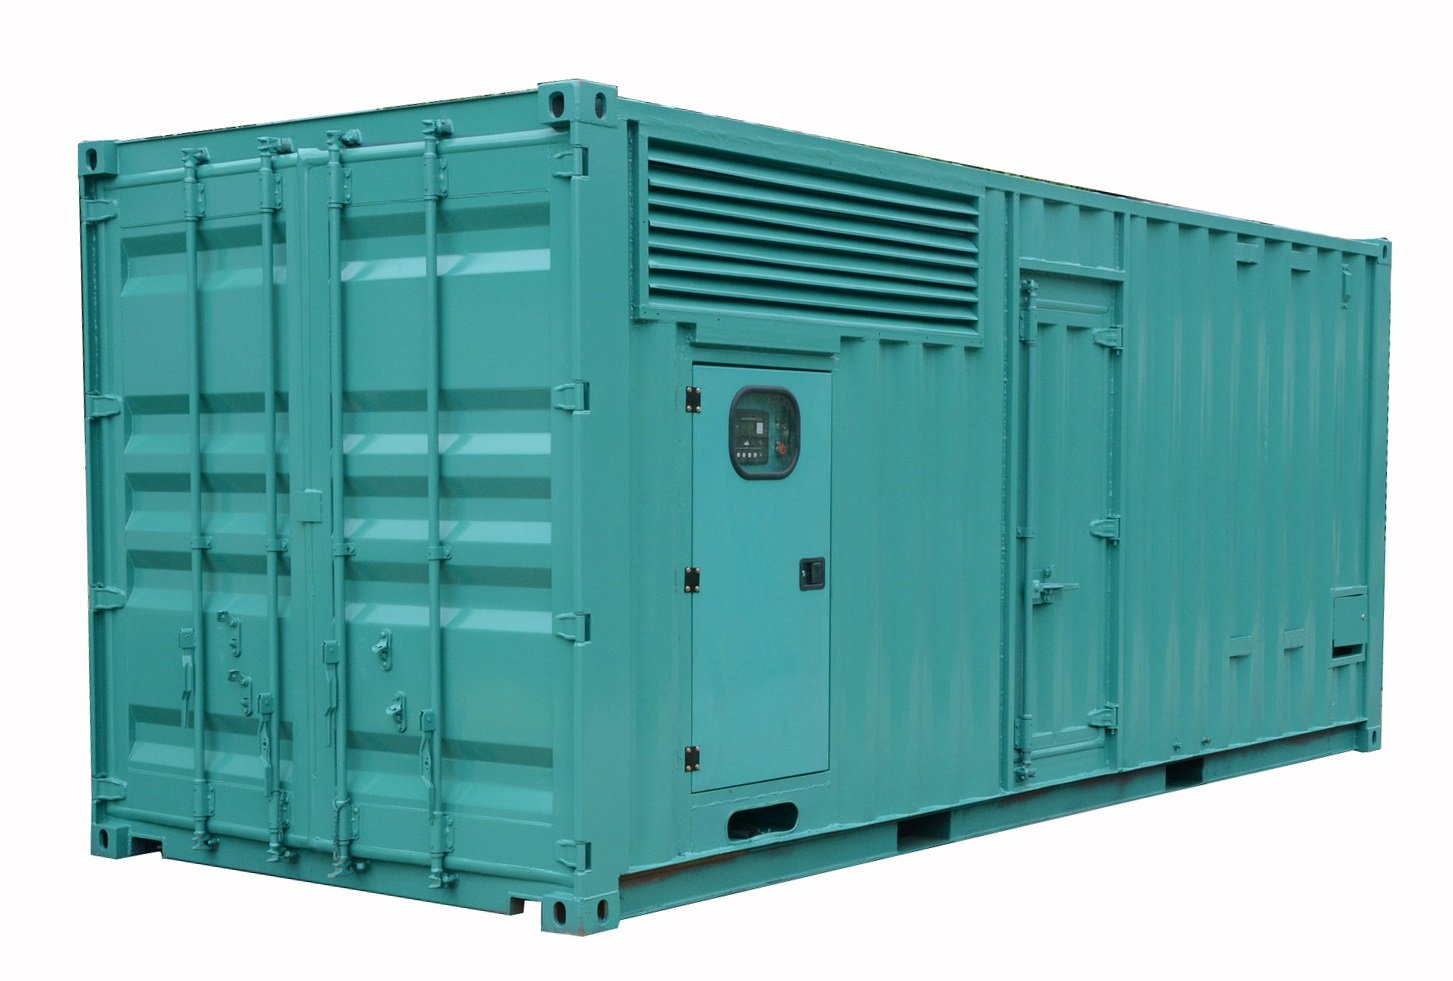 Generator diesla o mocy 1000 kVA z dźwiękoszczelną osłoną wykonaną w standardowym pojemniku 20 stóp